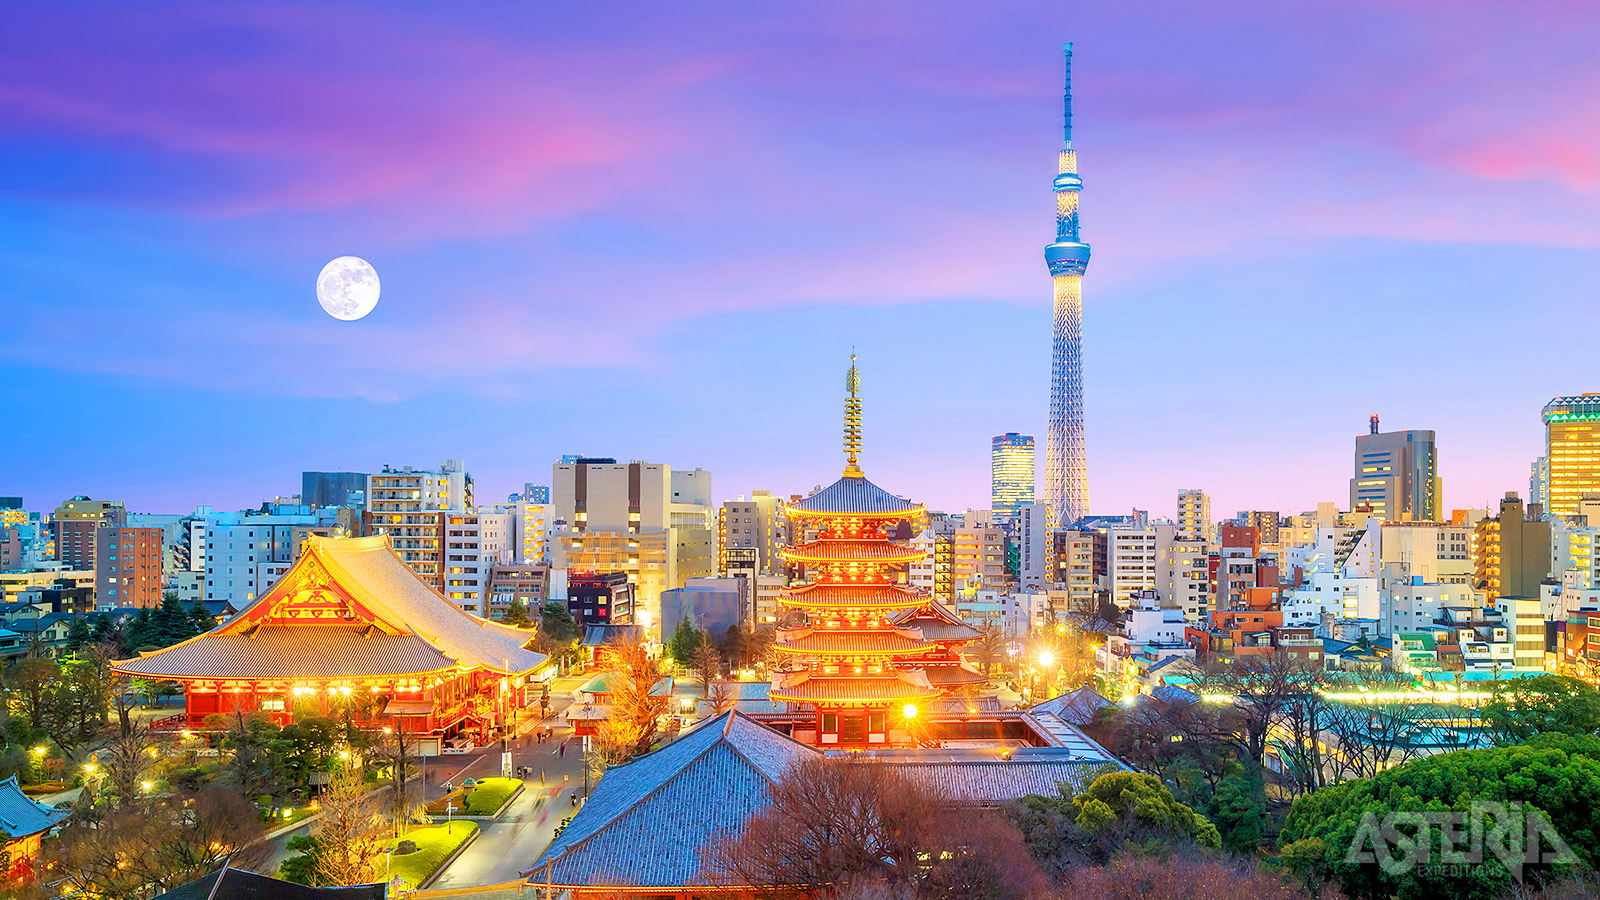 Welkom in de hoofstad Tokio, waar traditie en innovatie elkaar ontmoeten